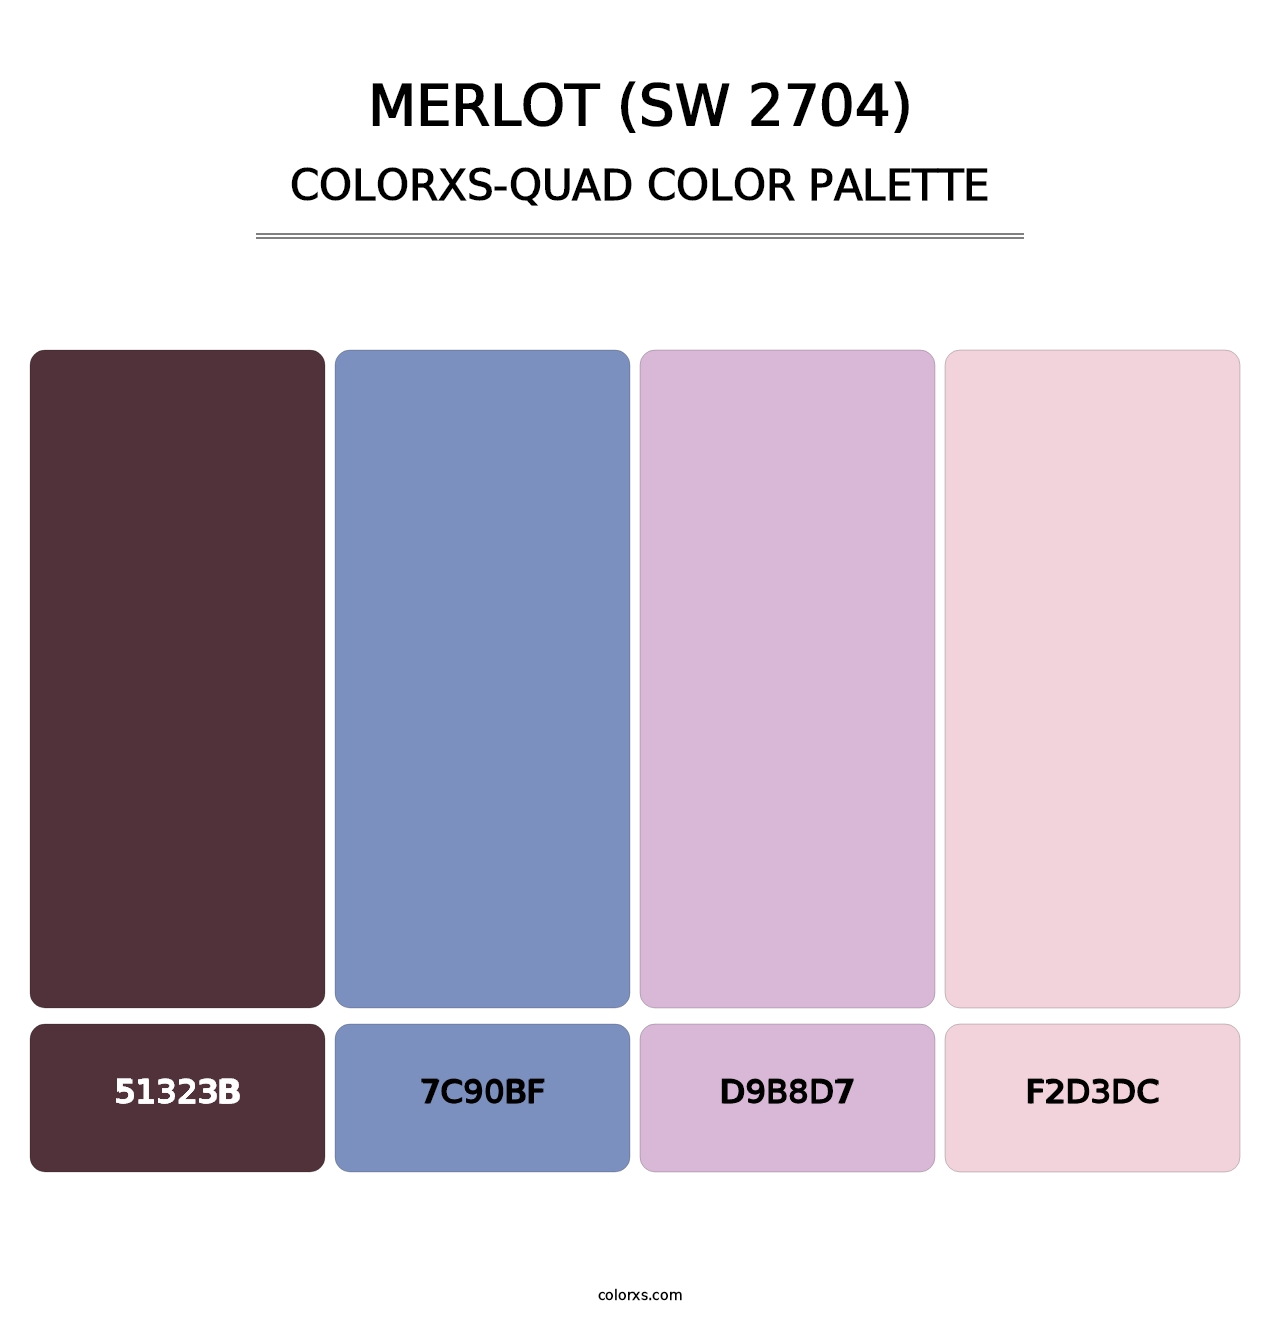 Merlot (SW 2704) - Colorxs Quad Palette